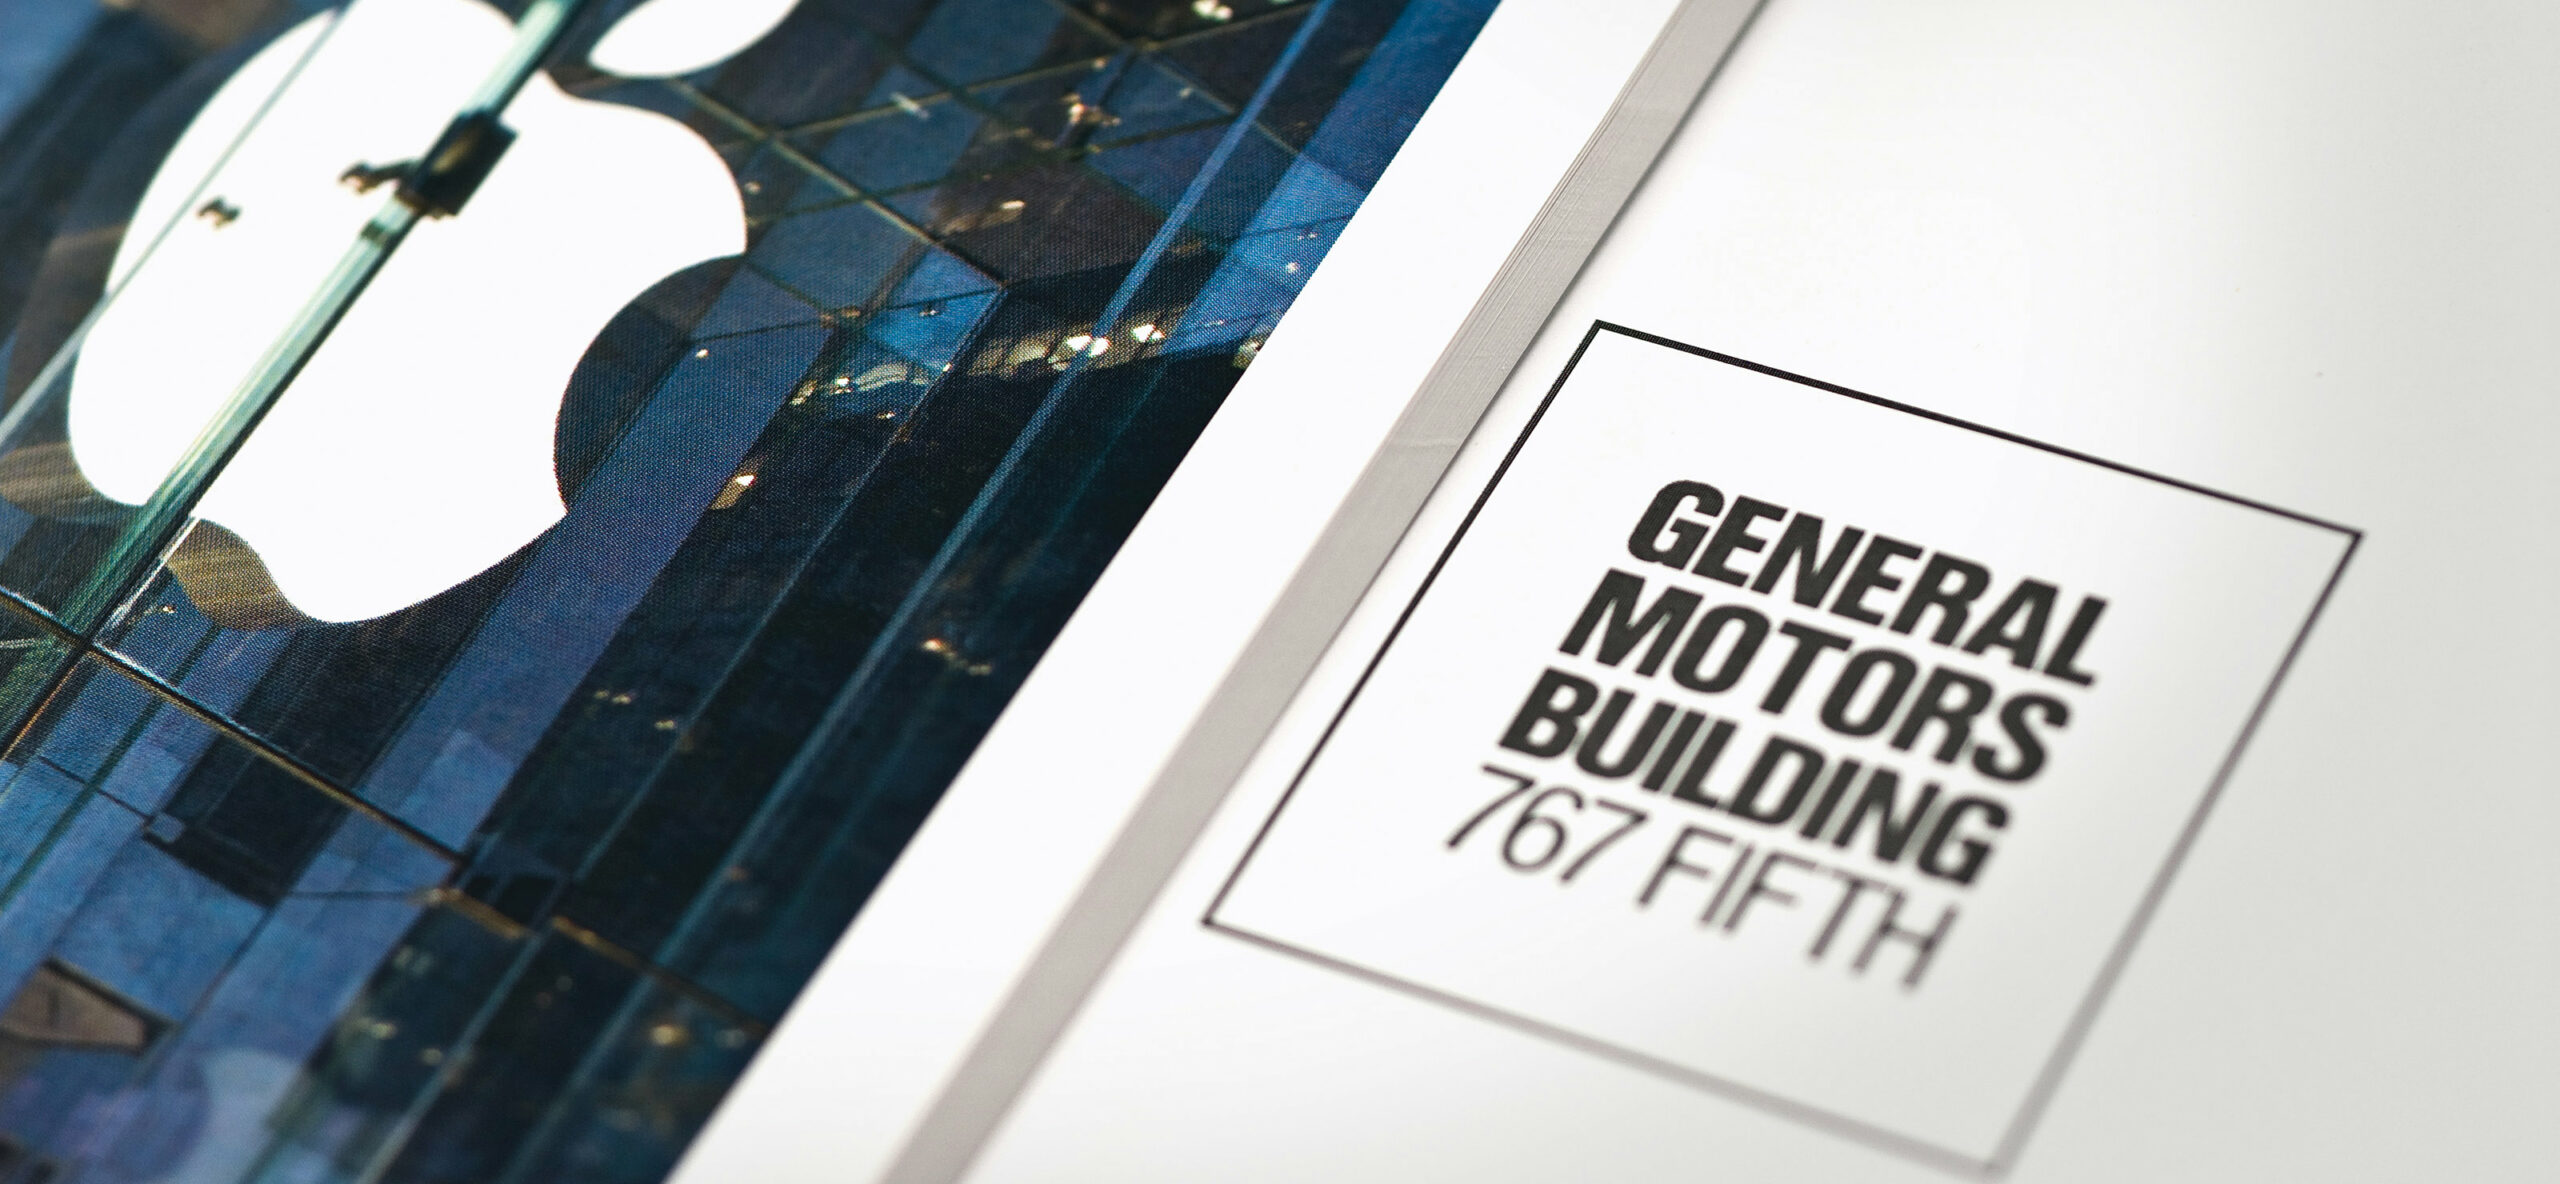 Print design for General Motors Building, Macklowe Properties.